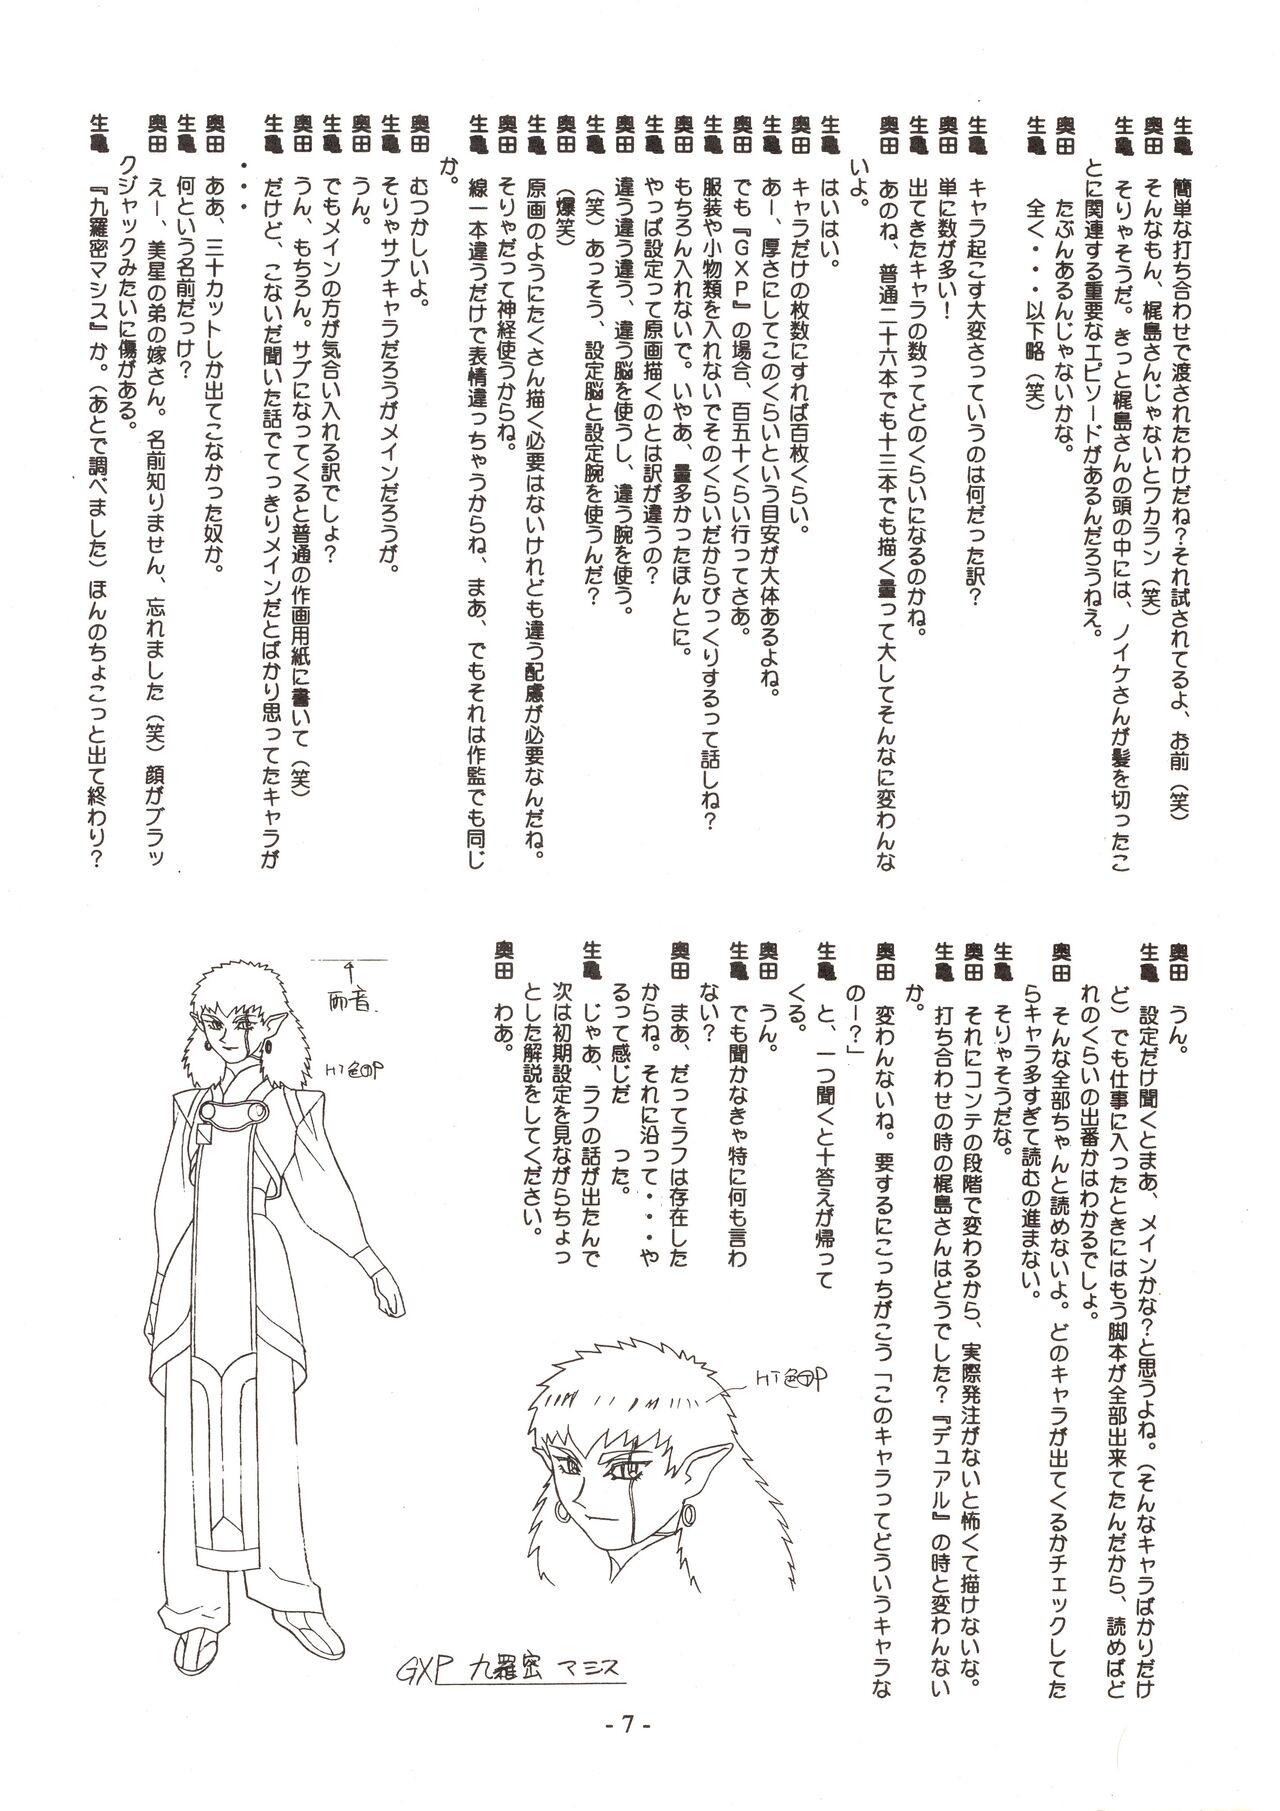 Hairypussy Jun's GXP Okuda Jun Sakuga Nokiroku - Tenchi muyo gxp Nalgas - Page 7